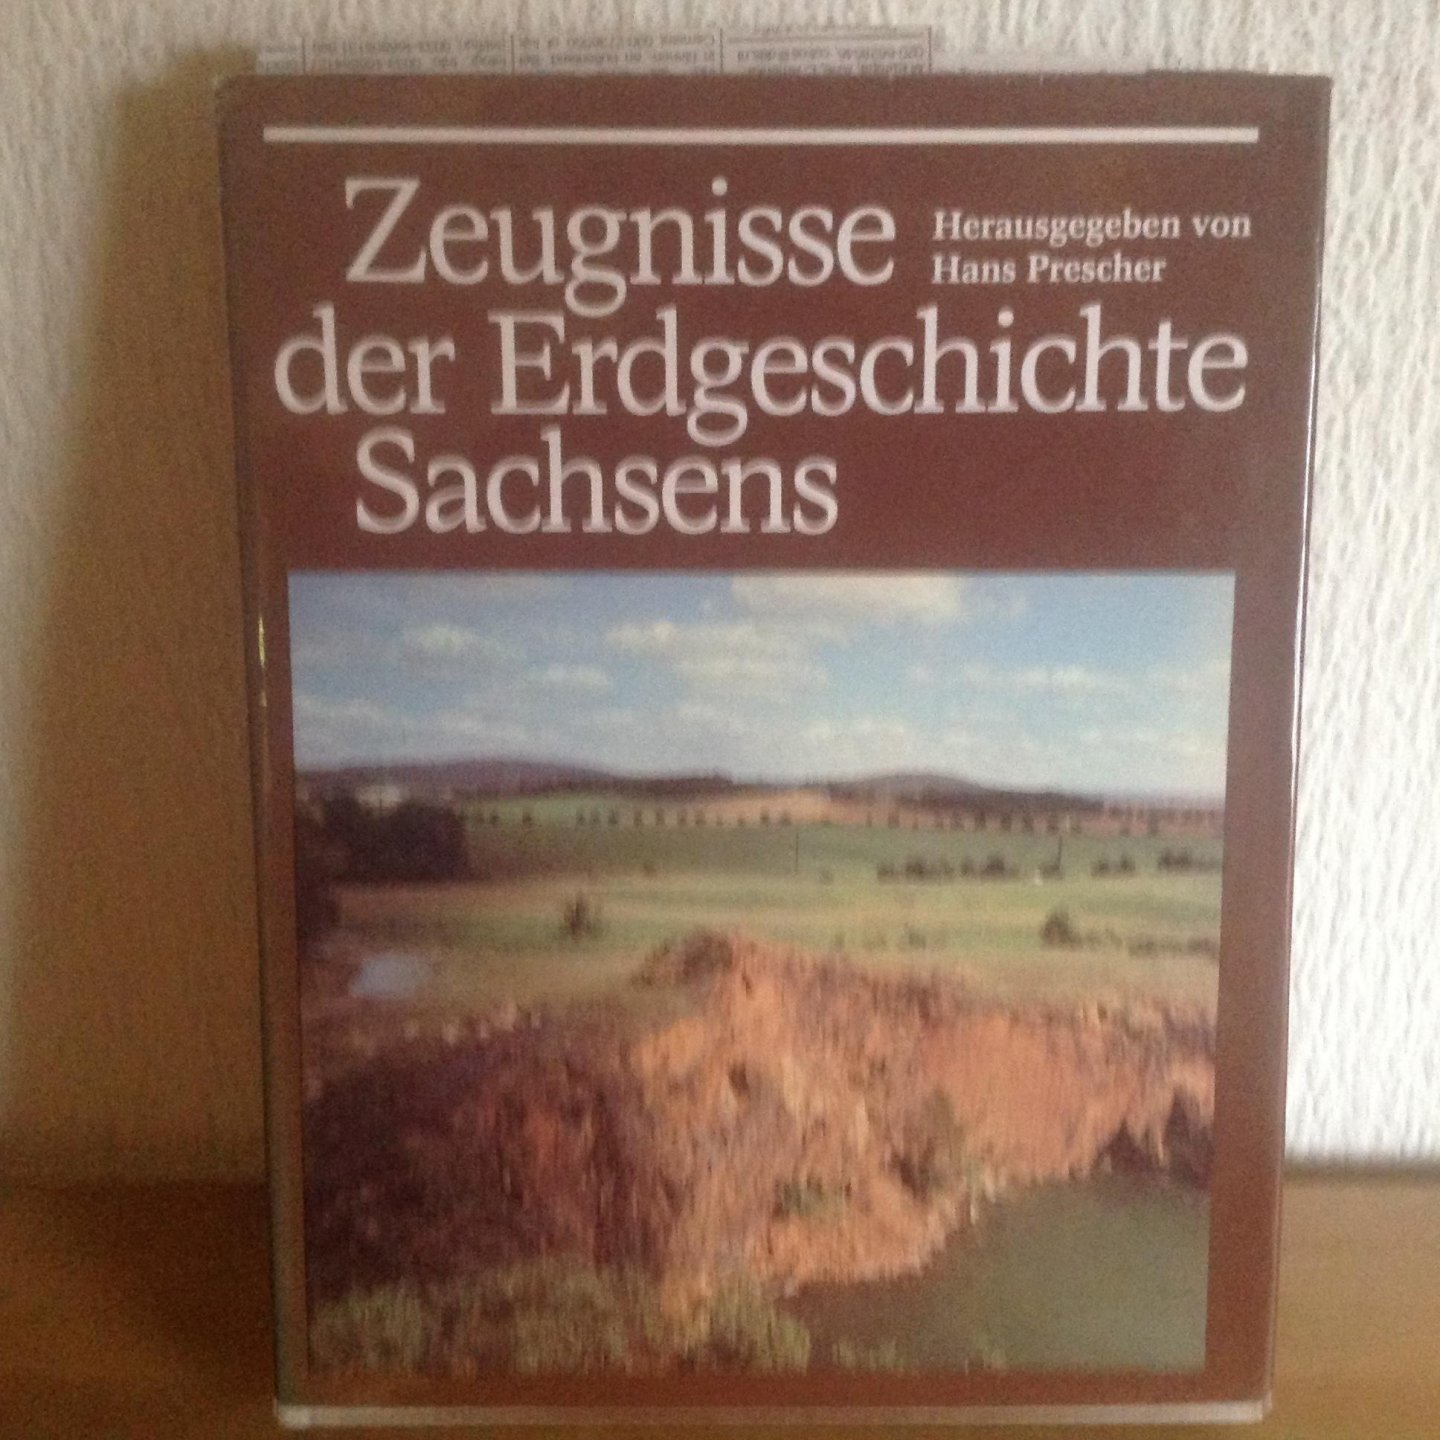 Hans prescher - Zeugnisse der Erdgeschichte Sachsens